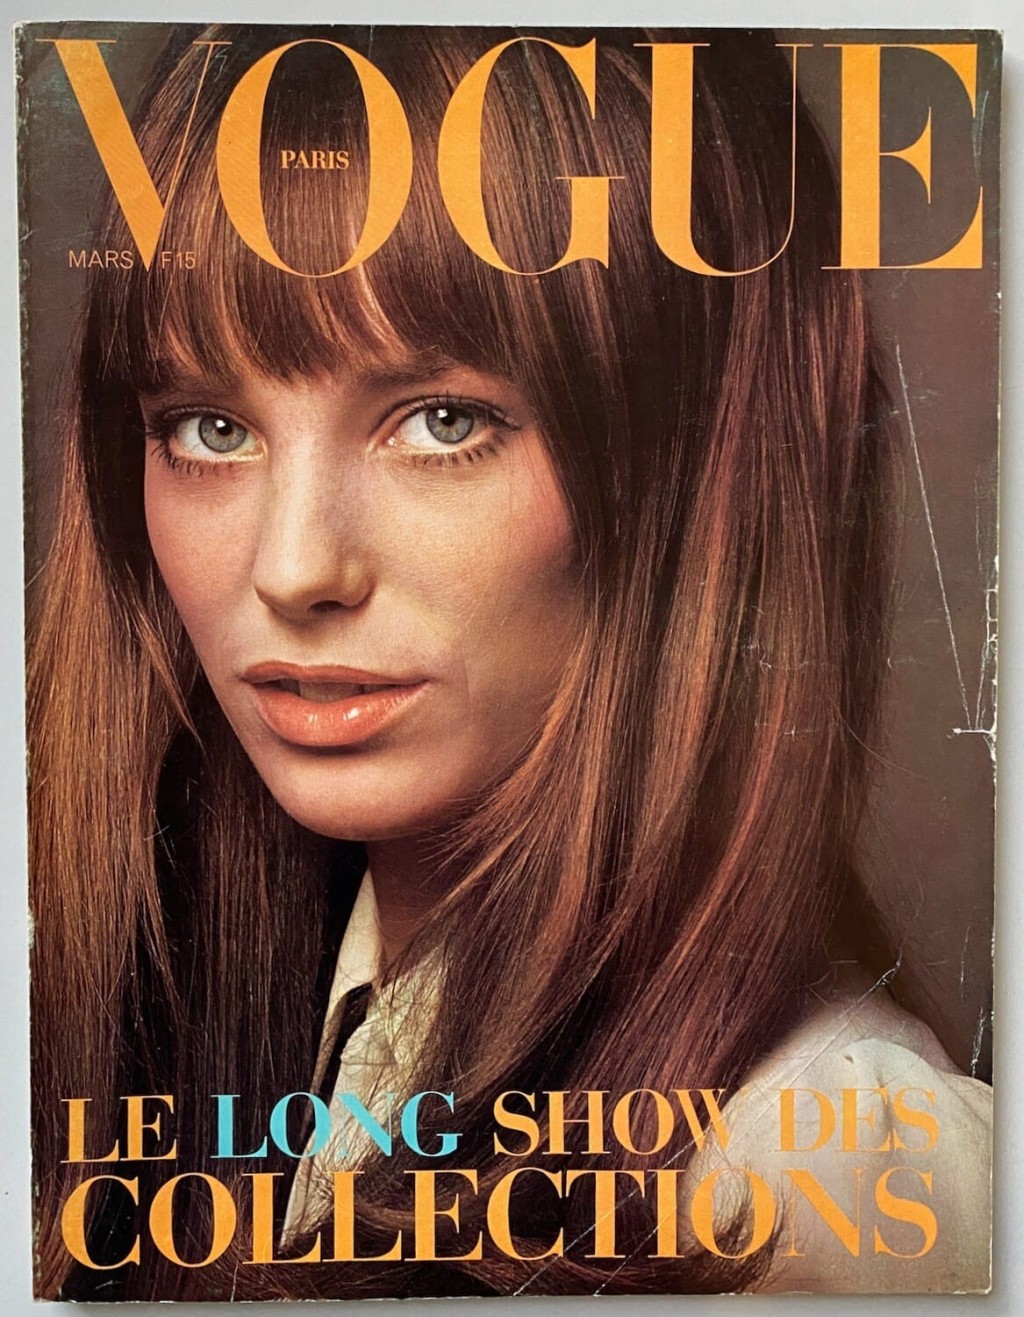 衣着趨時有型的Jane亦是60年代有名的fashion icon，經常登上時尚雜誌封面。